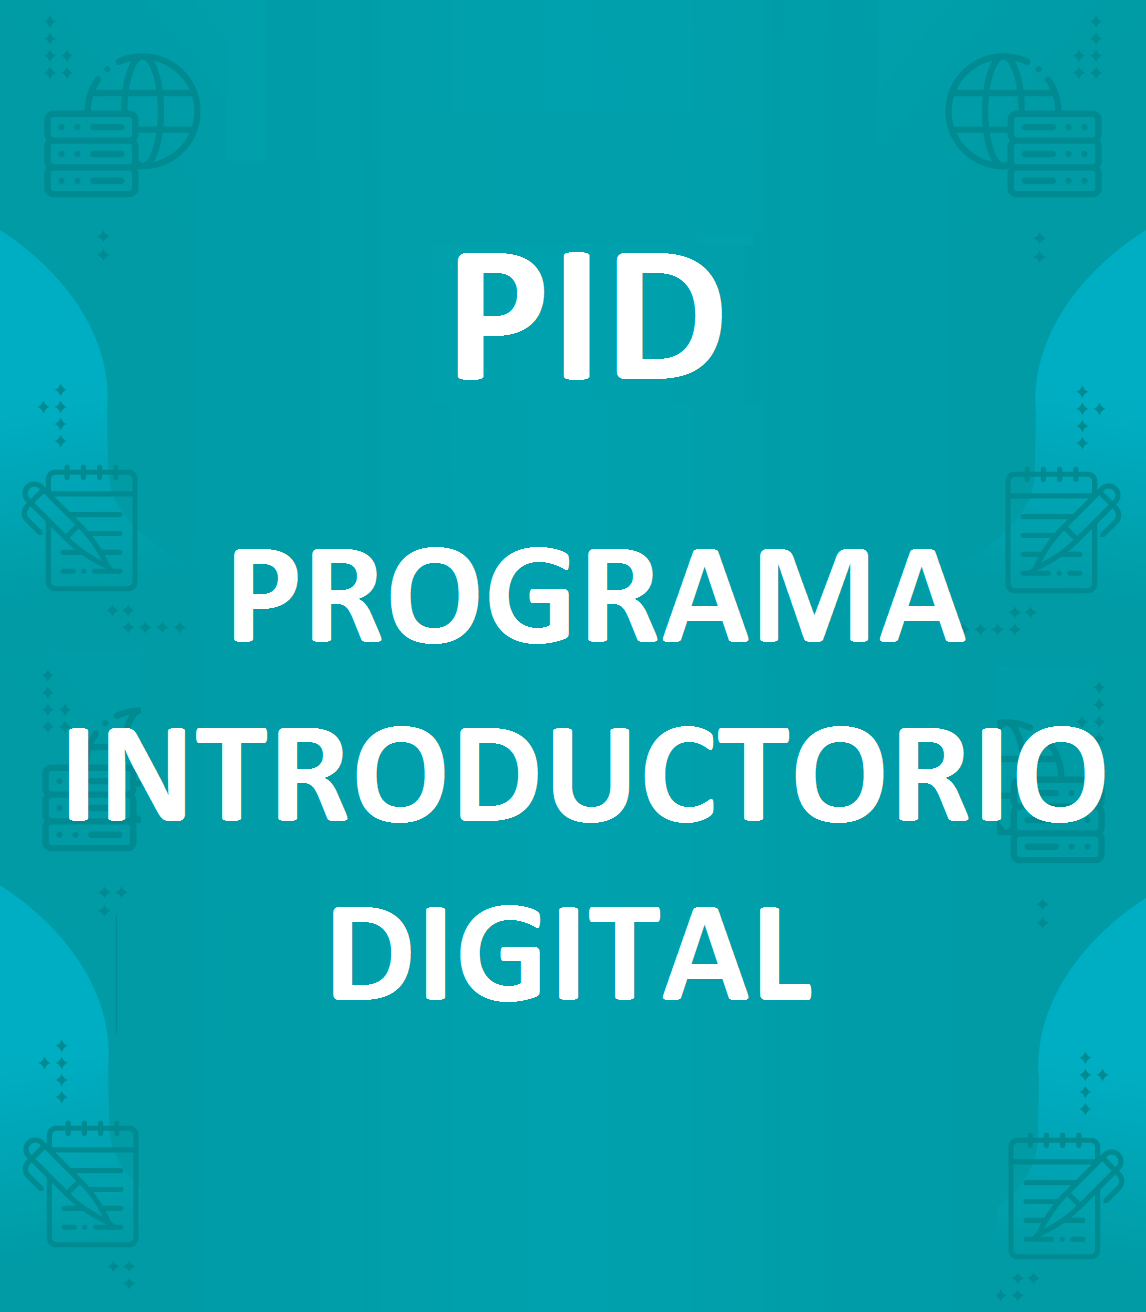 Programa Introductorio Digital - Empresas